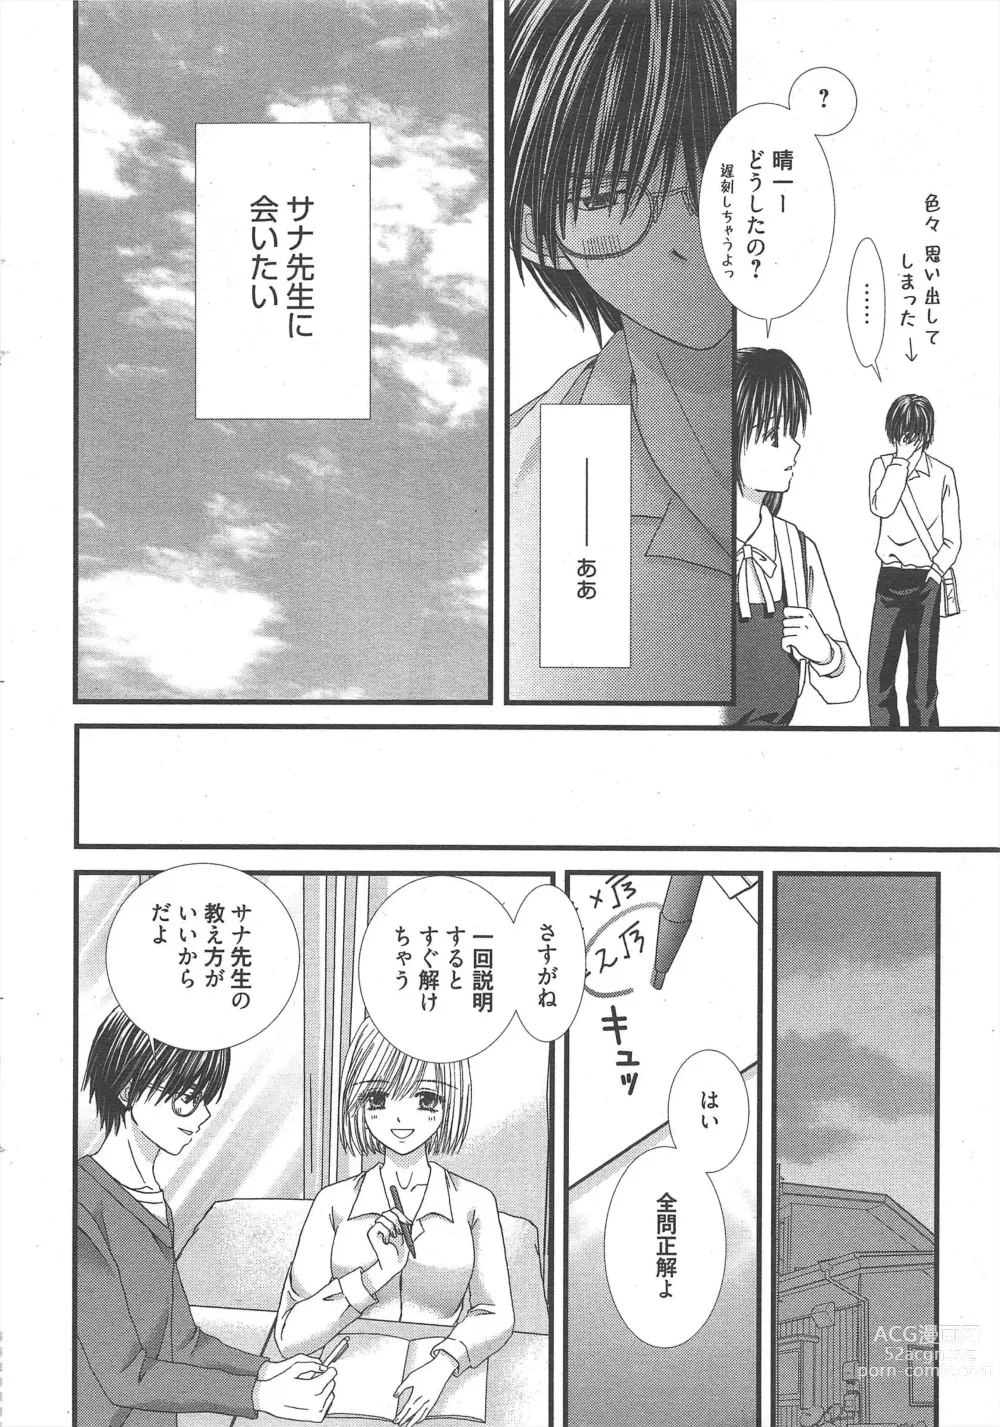 Page 14 of manga Manga Bangaichi 2012-12